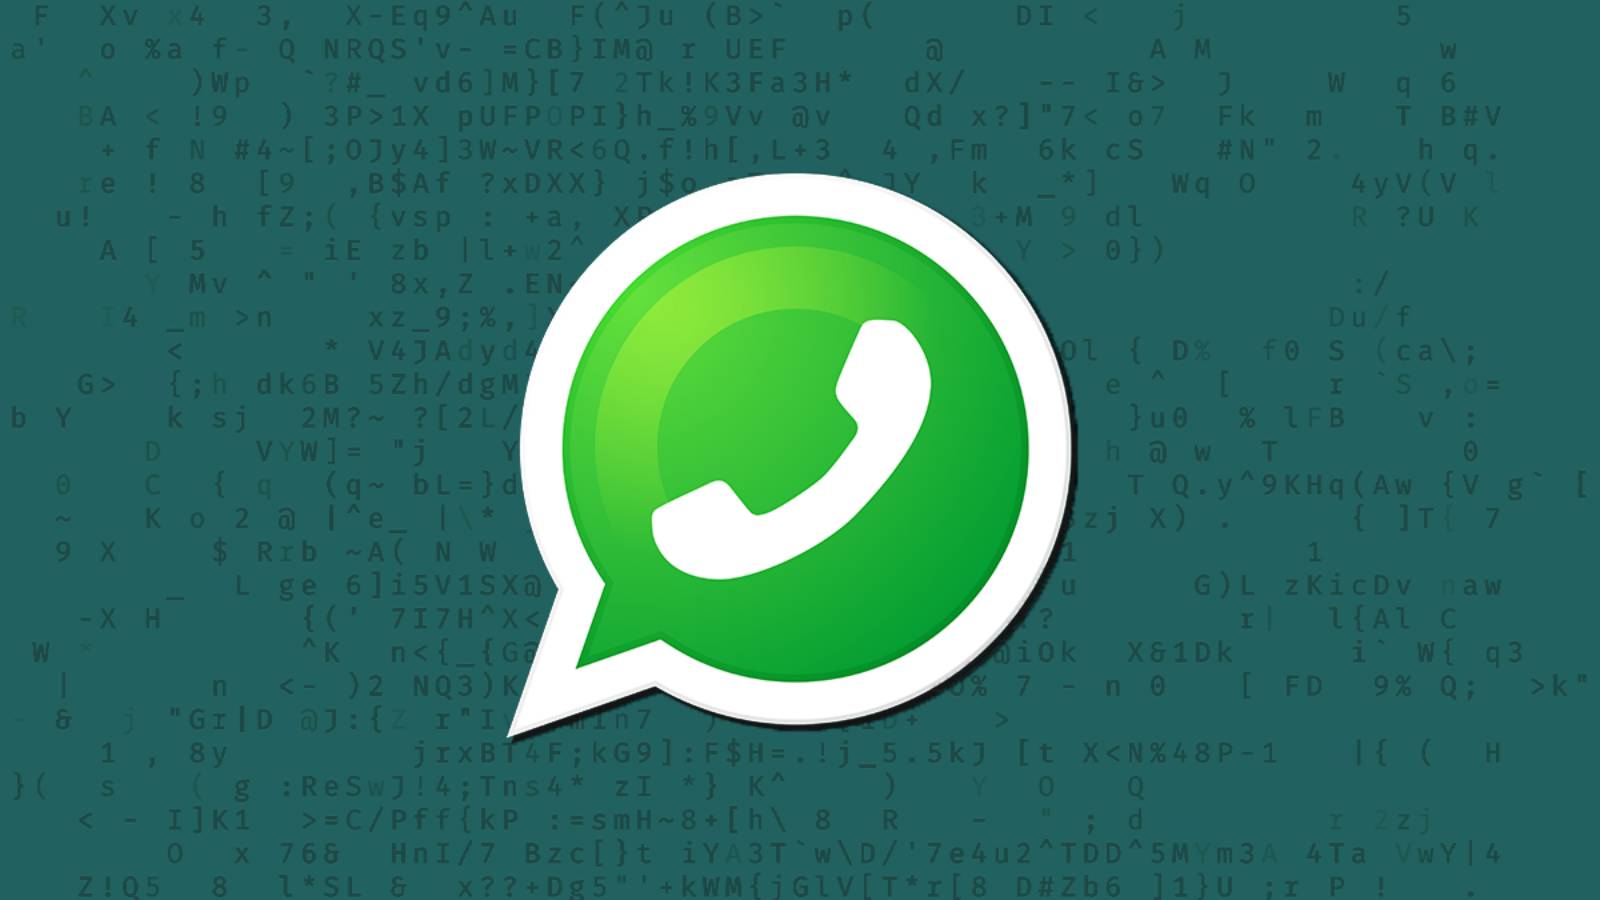 WhatsApp nimmt offizielle LAST-MINUTE-Änderung für iPhone und Android vor